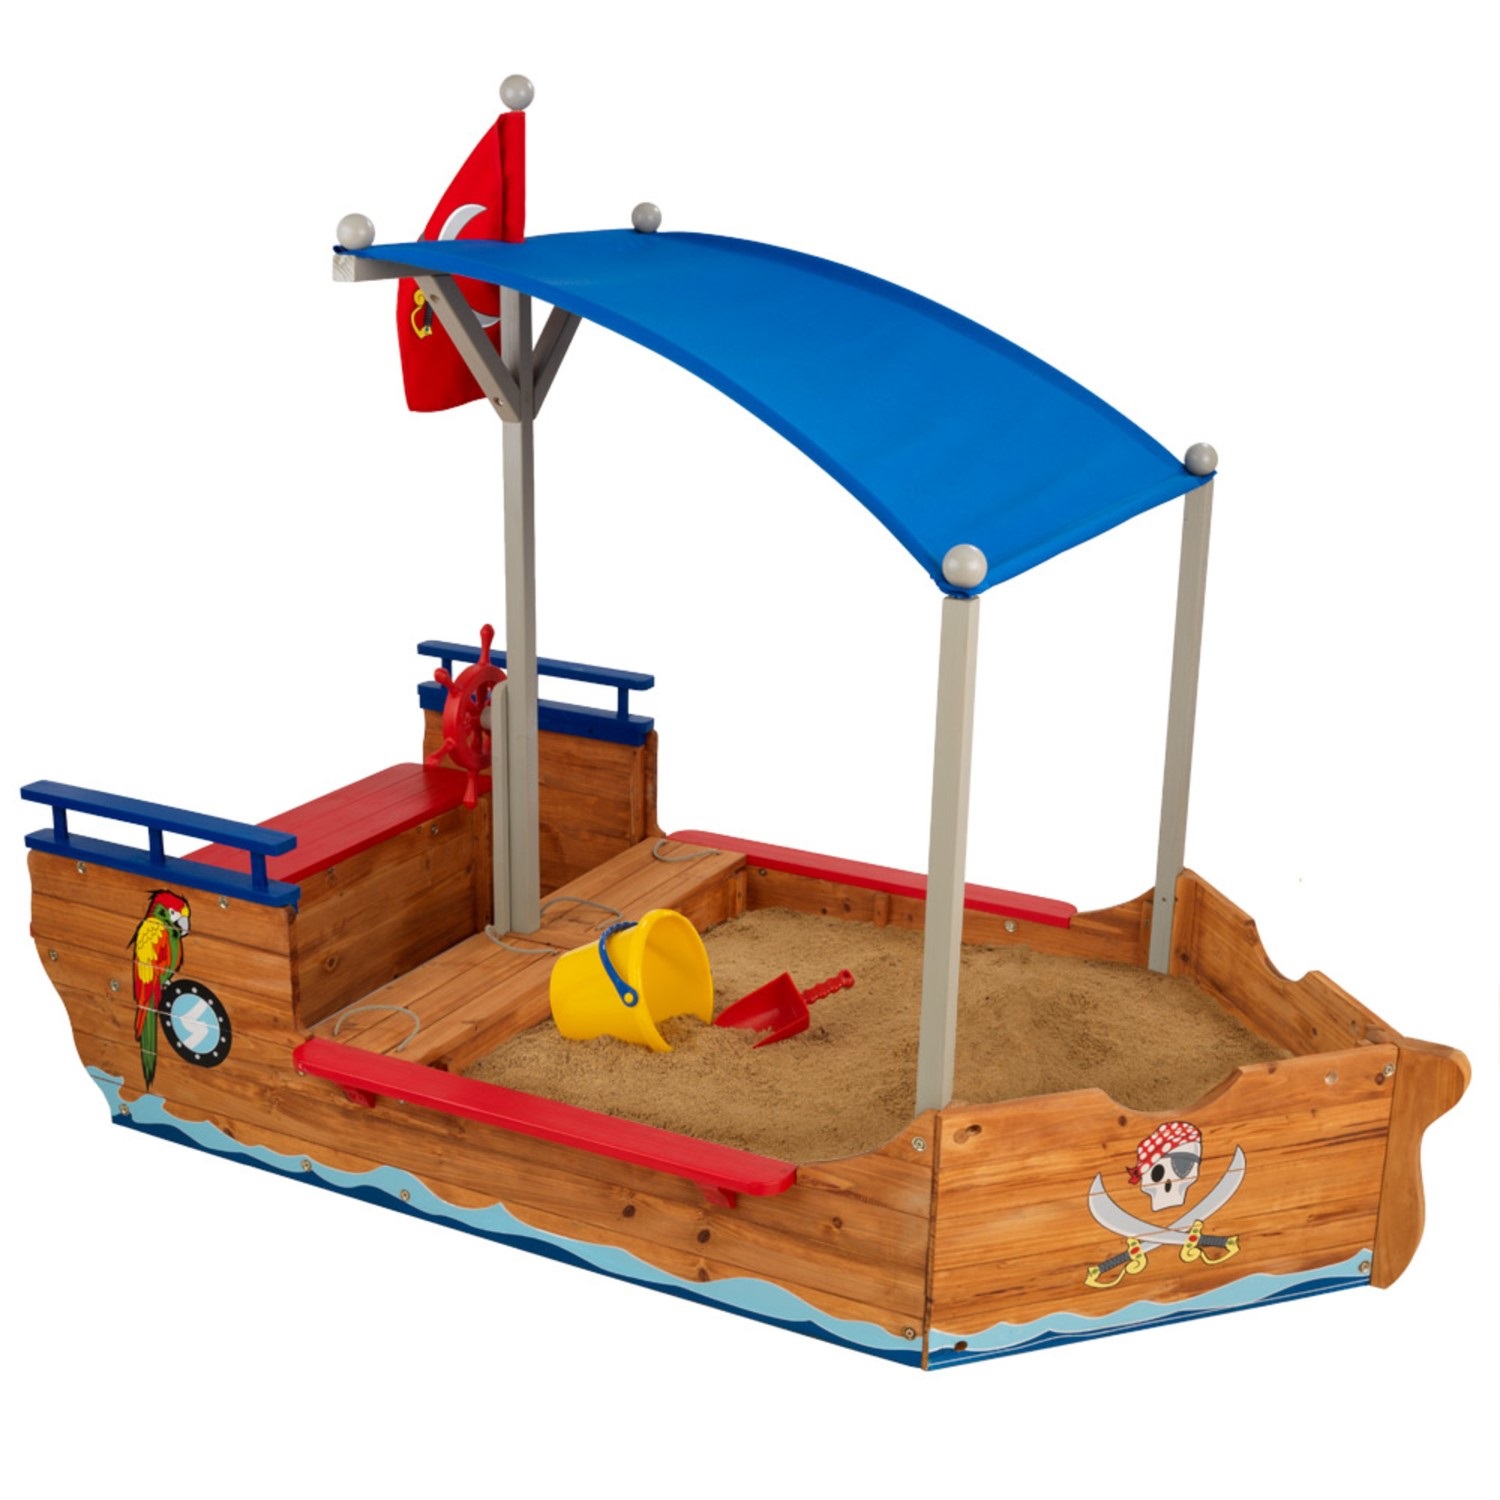 Kidkraft Pirate Sandboat Playhouse